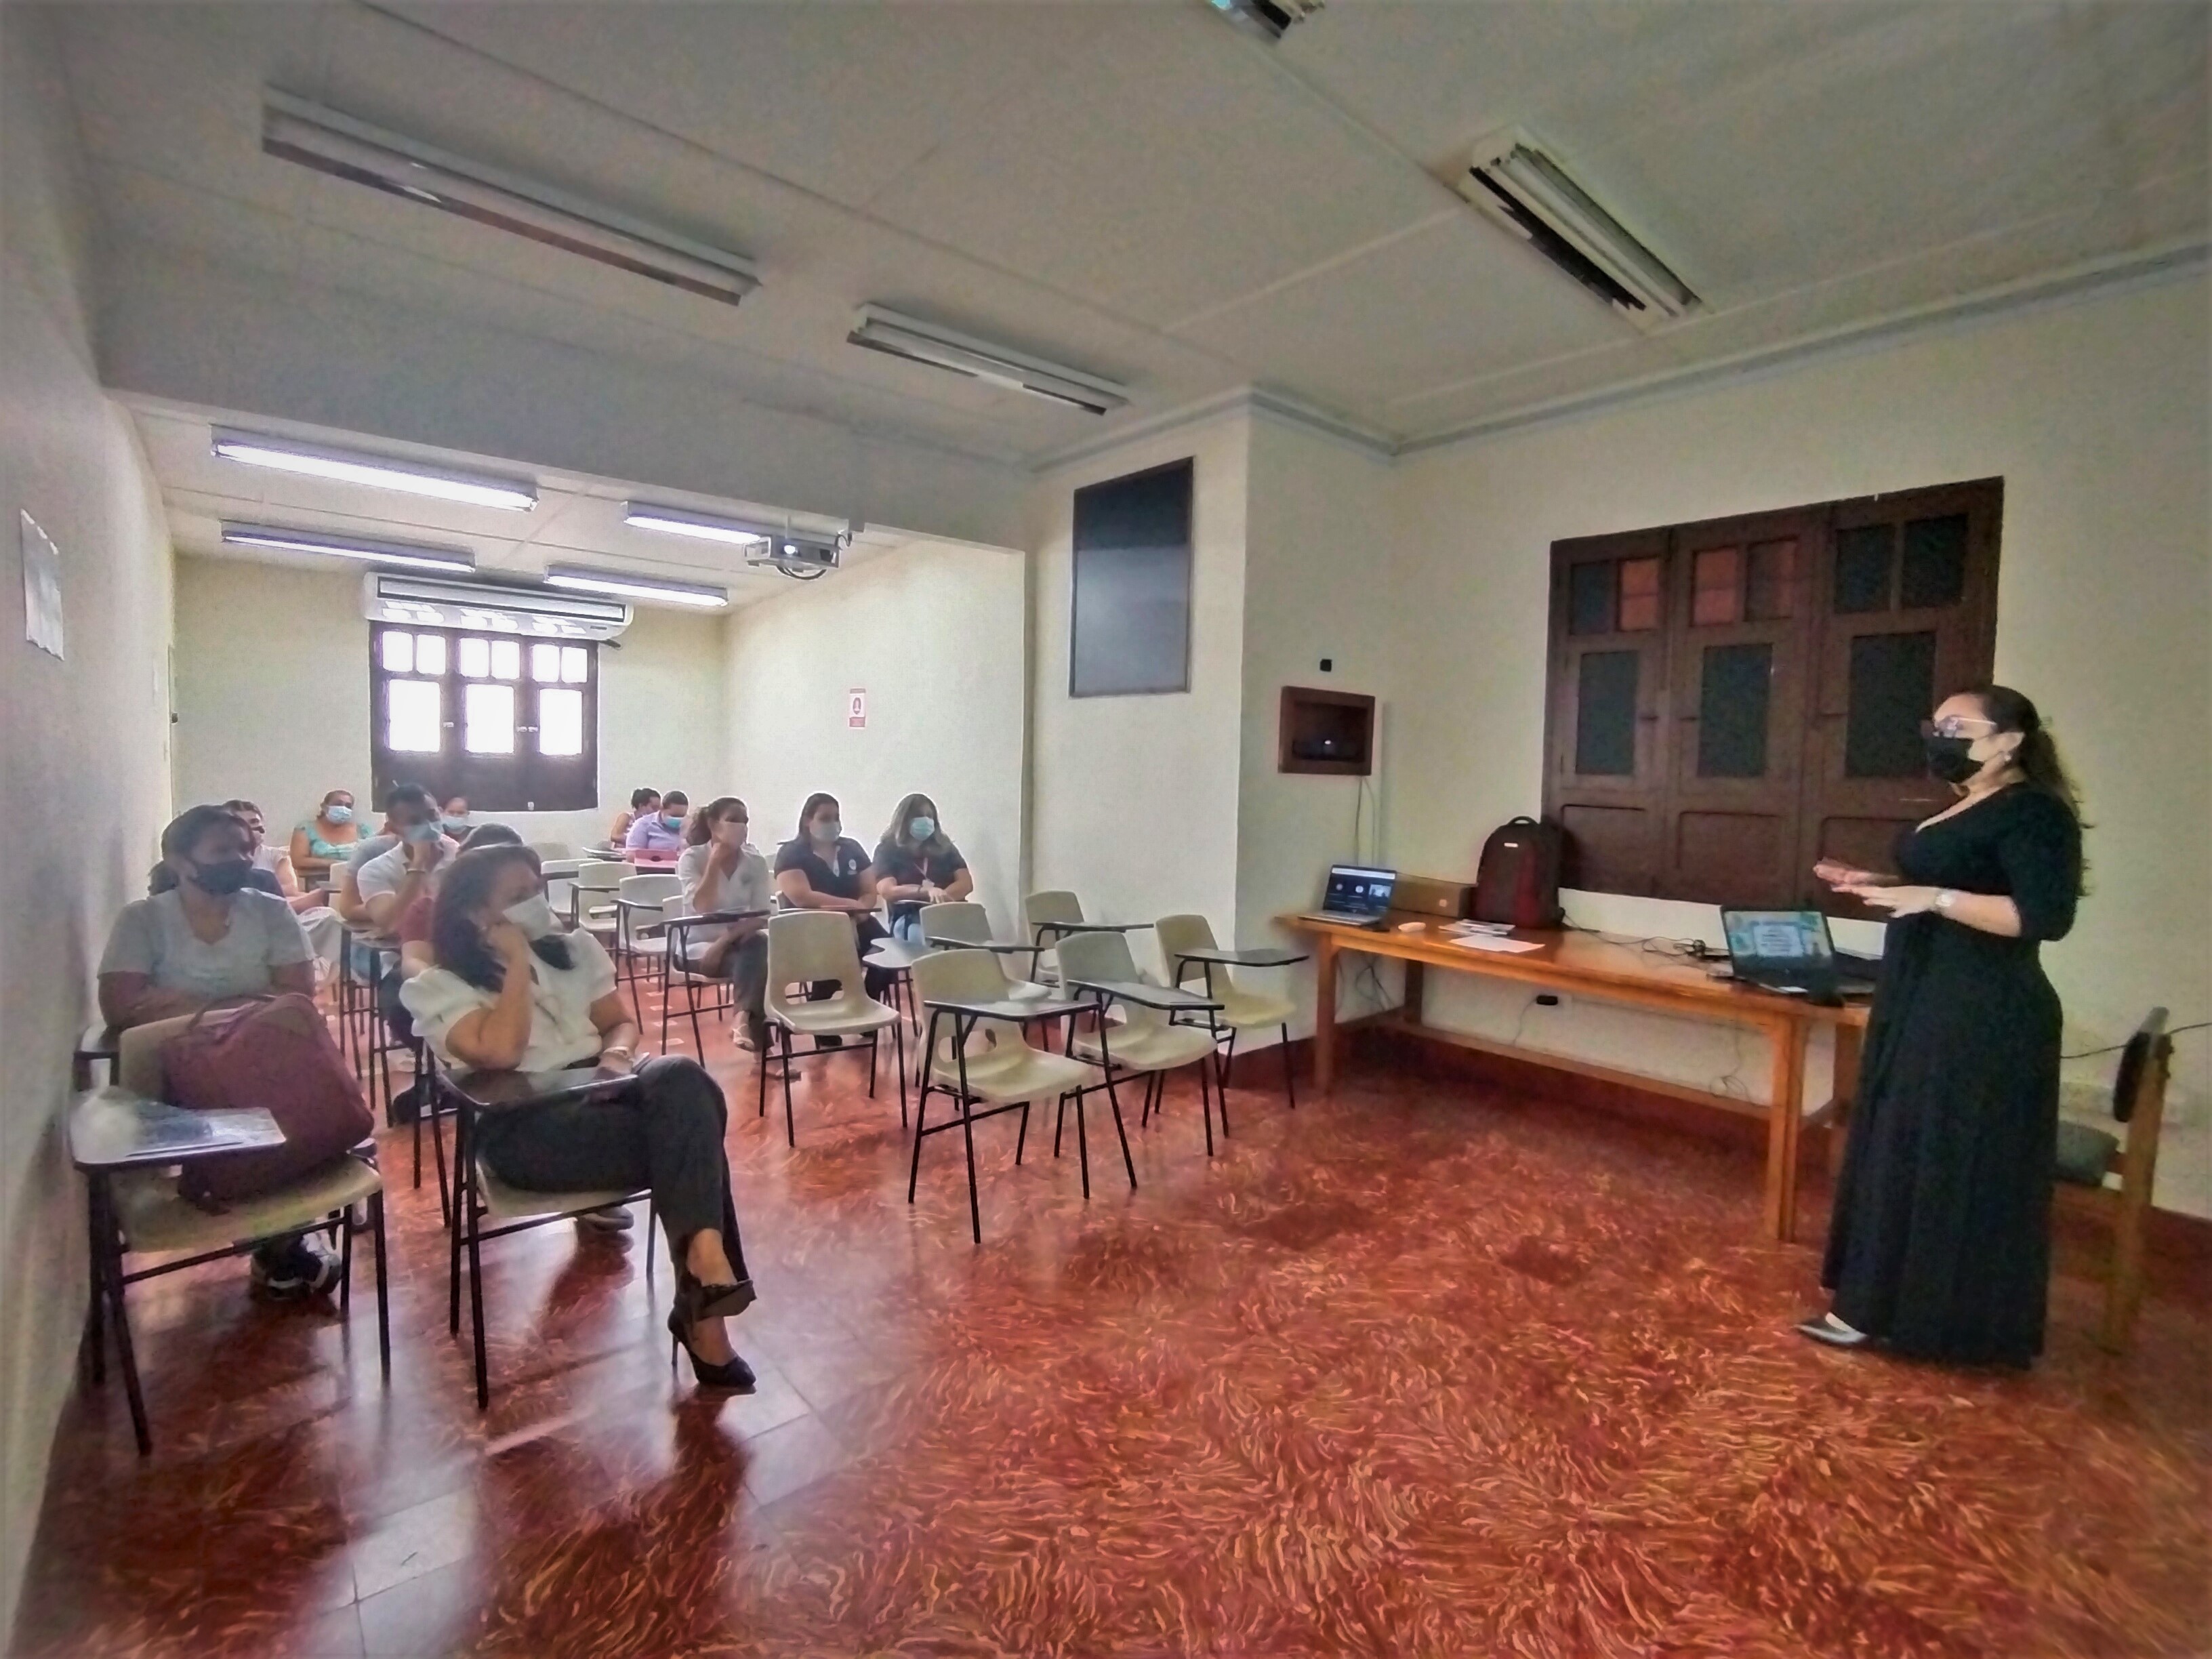  Conferencia: “Mujeres Malabaristas, un Desafío en el Rol Profesional y en el Hogar